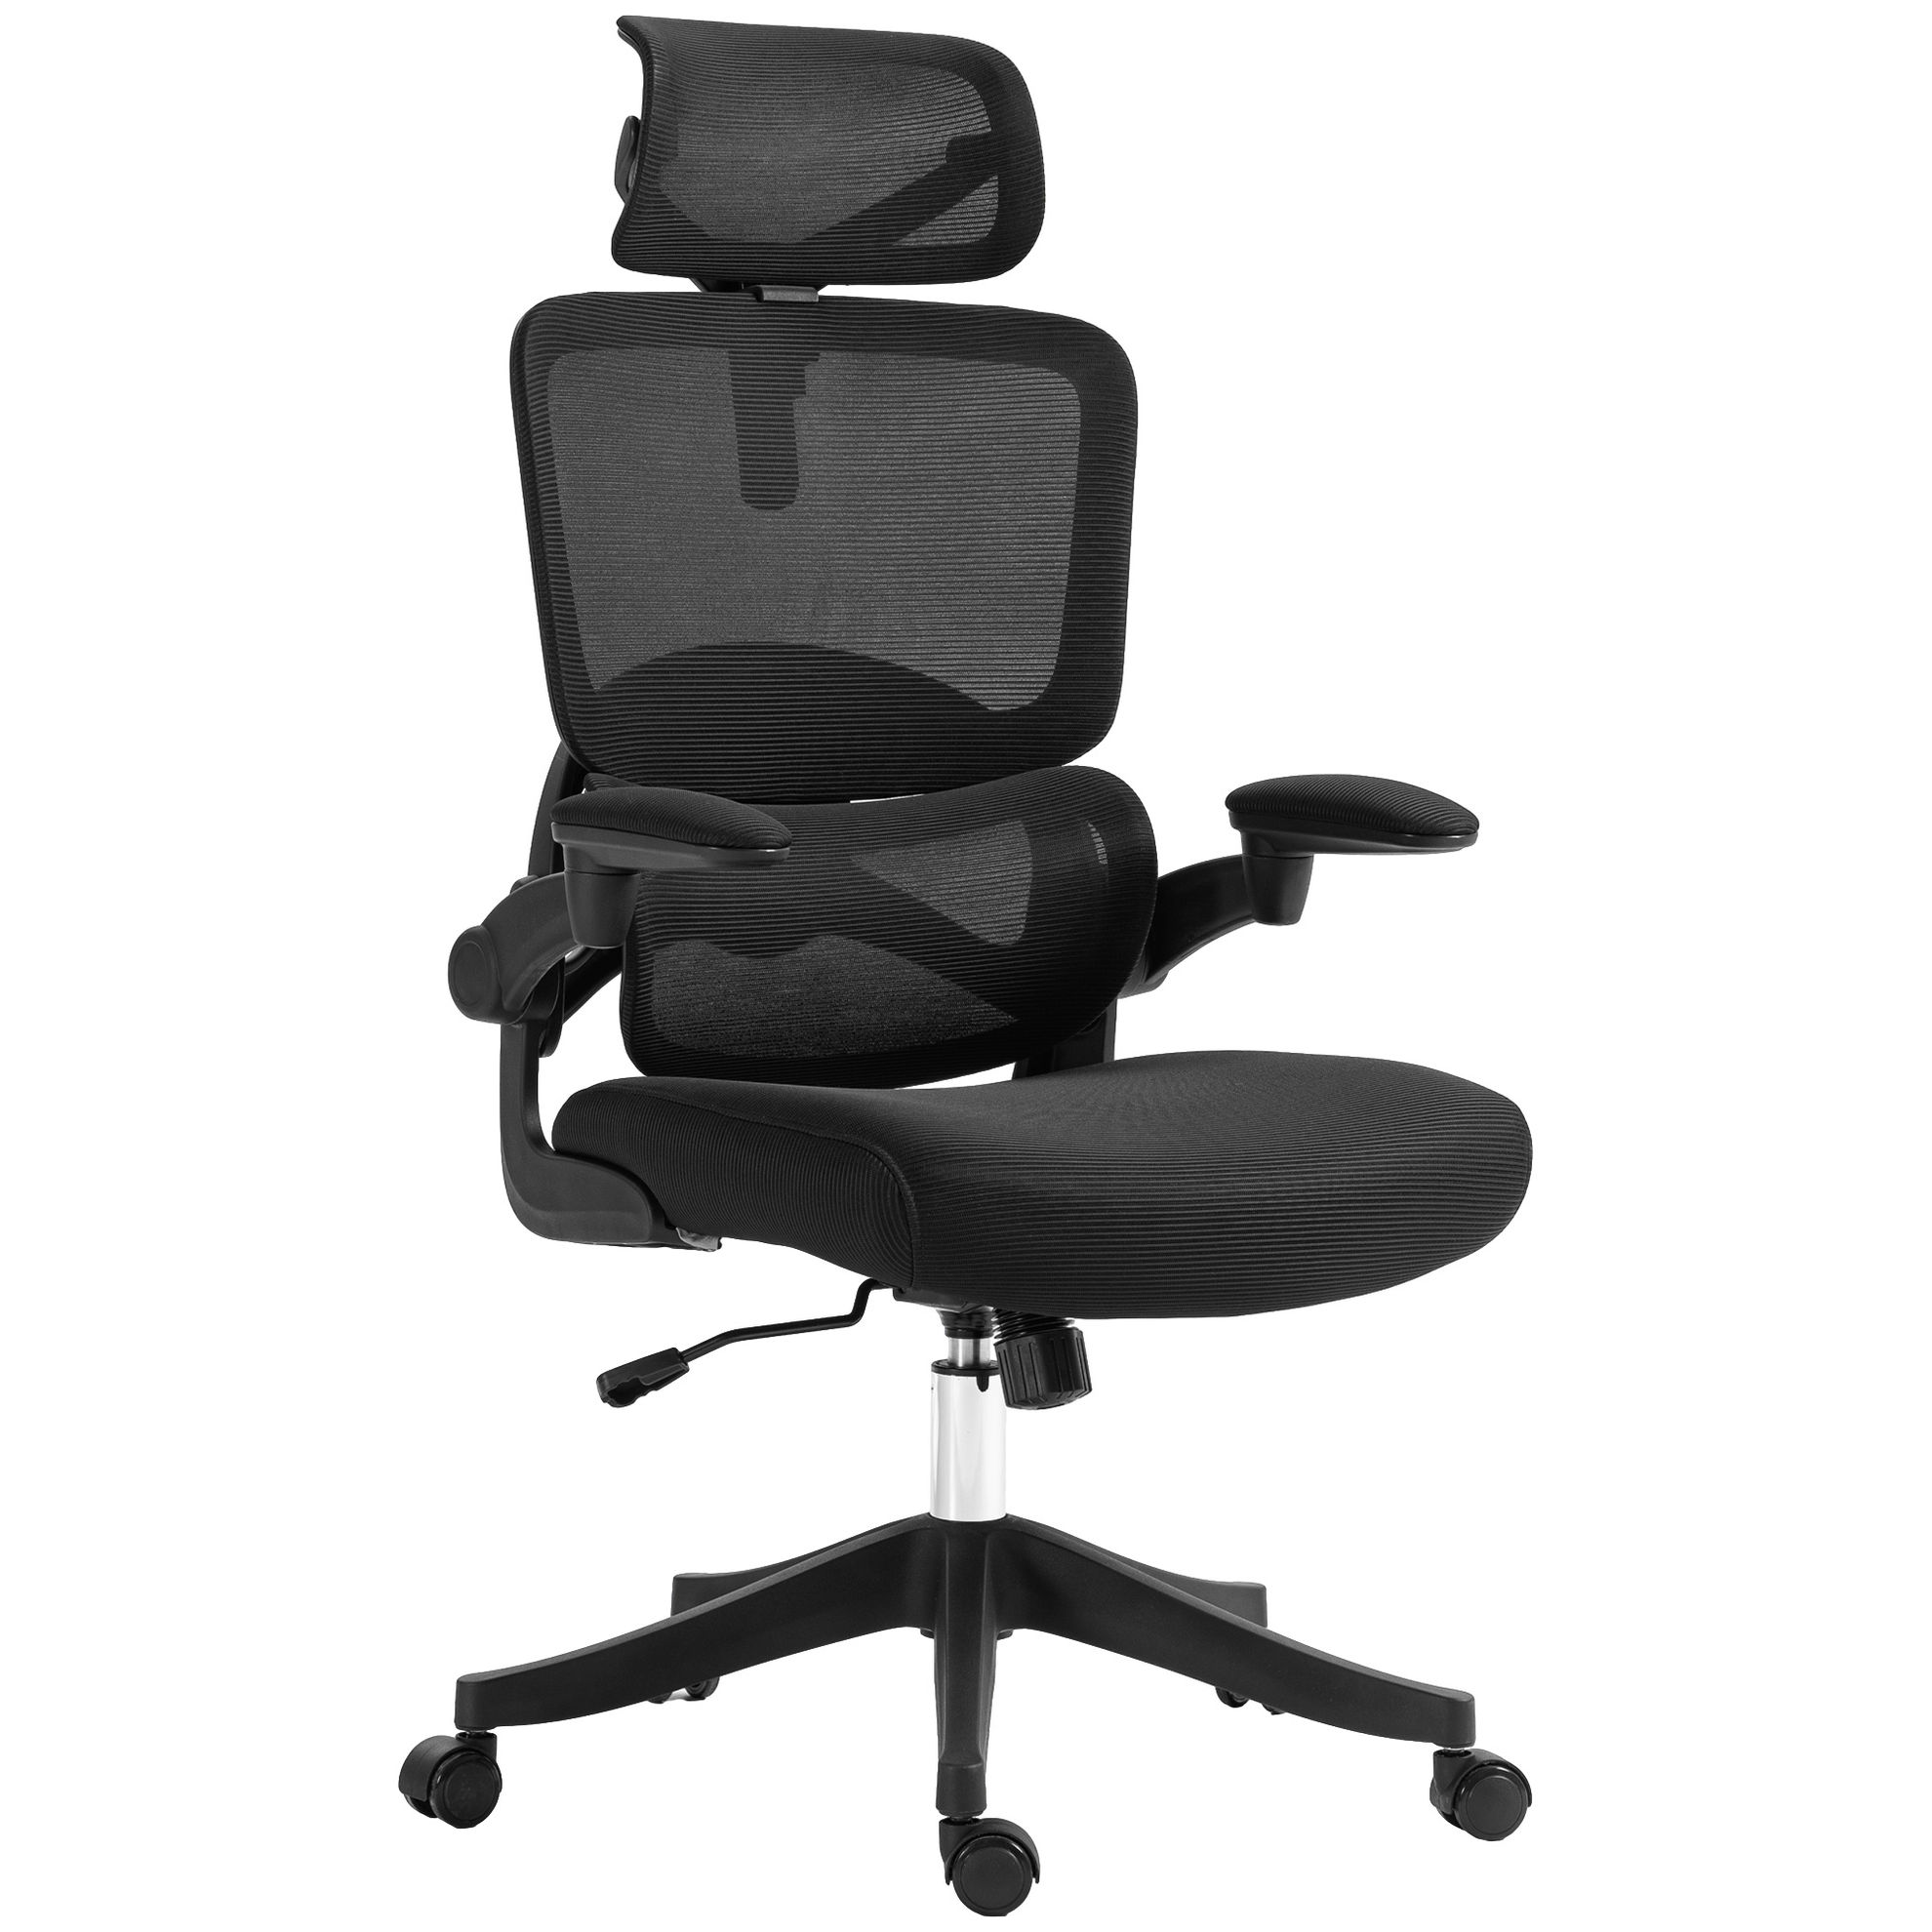 schwarz Bürostuhl verstellbarer Kopfstütze Armlehnen schwarz und Farbe: mit hochklappbaren